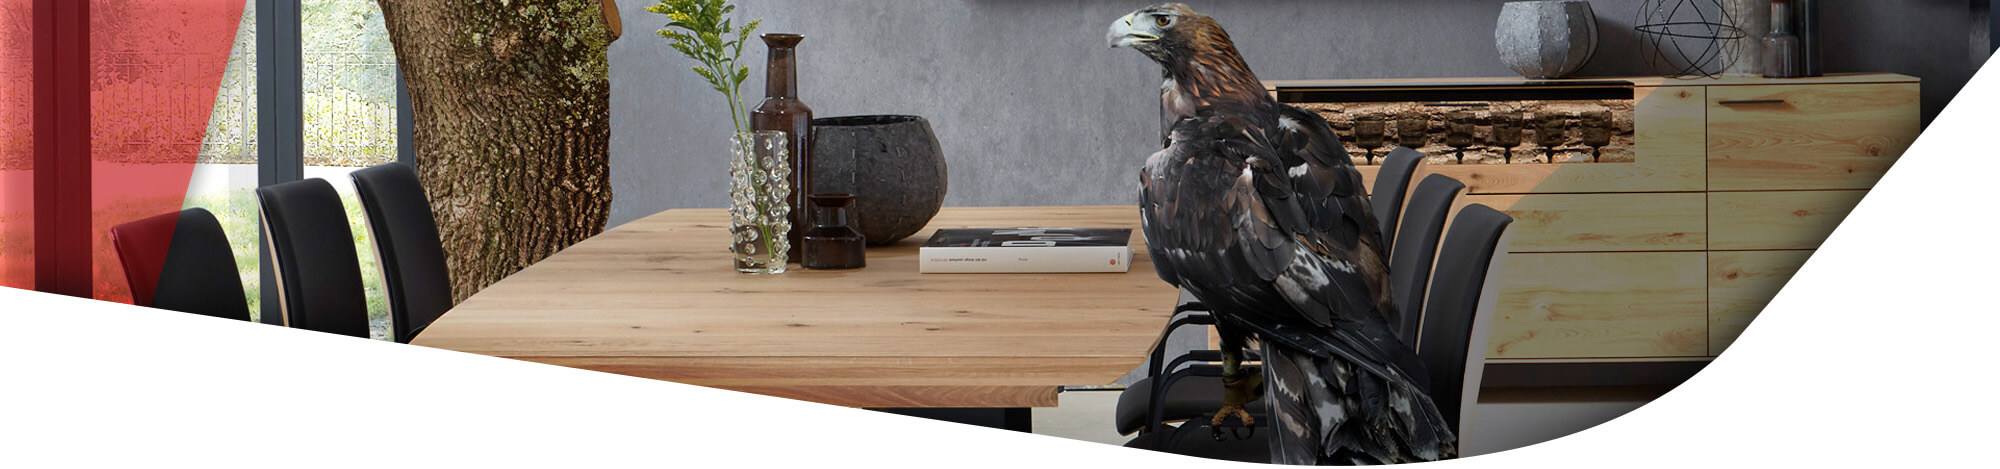 Adler auf einem Polsterstuhl im Esszimmer sitzend